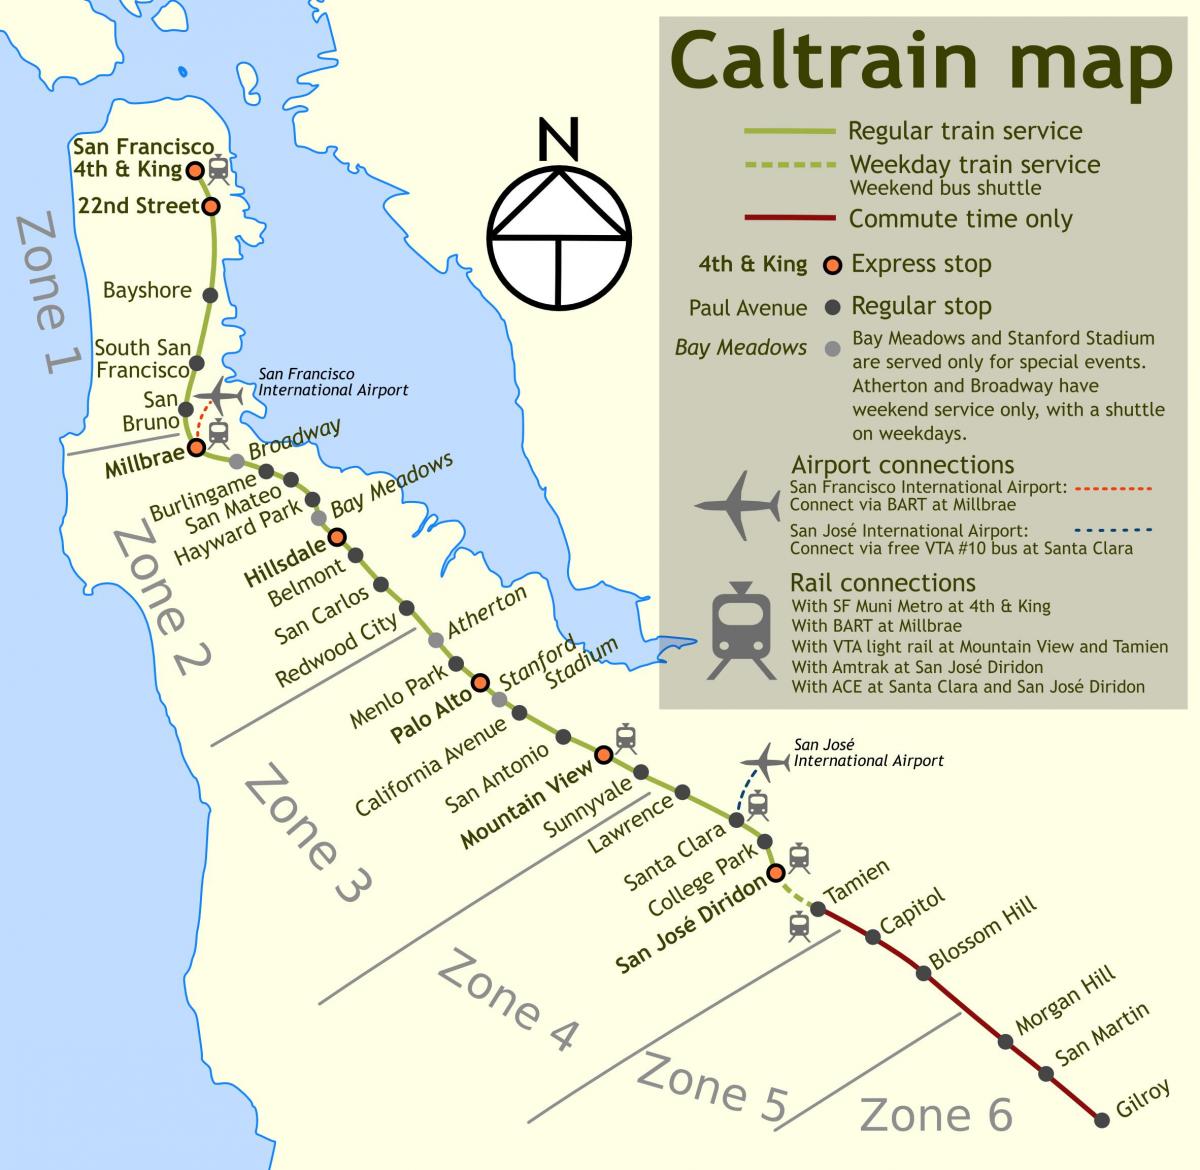 caltrain رک جاتا ہے کا نقشہ